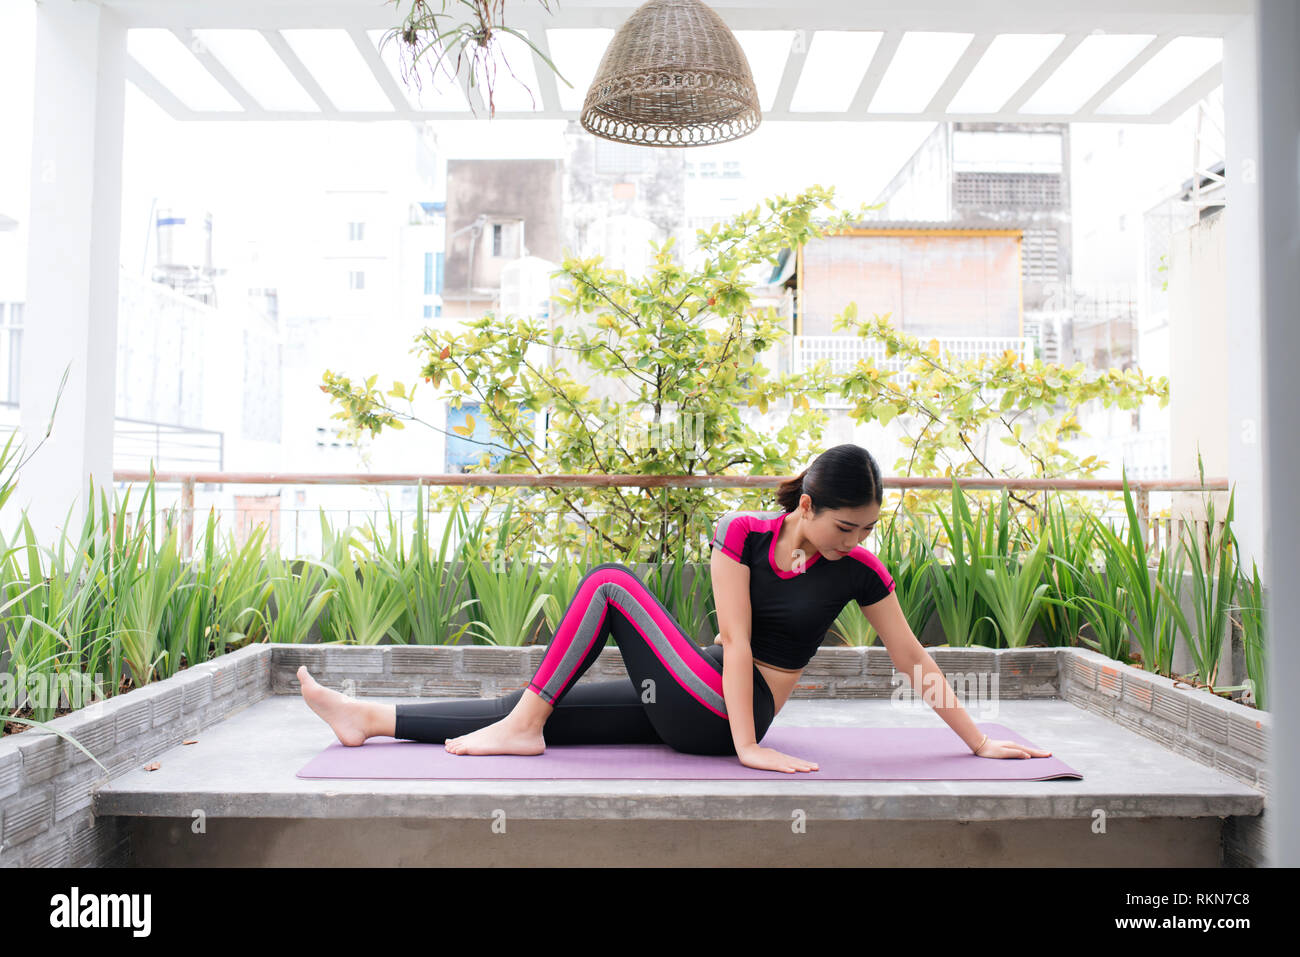 Junge asiatische Frau in Entspannung stretching Position auf Ihrem Balkon  Etage Stockfotografie - Alamy